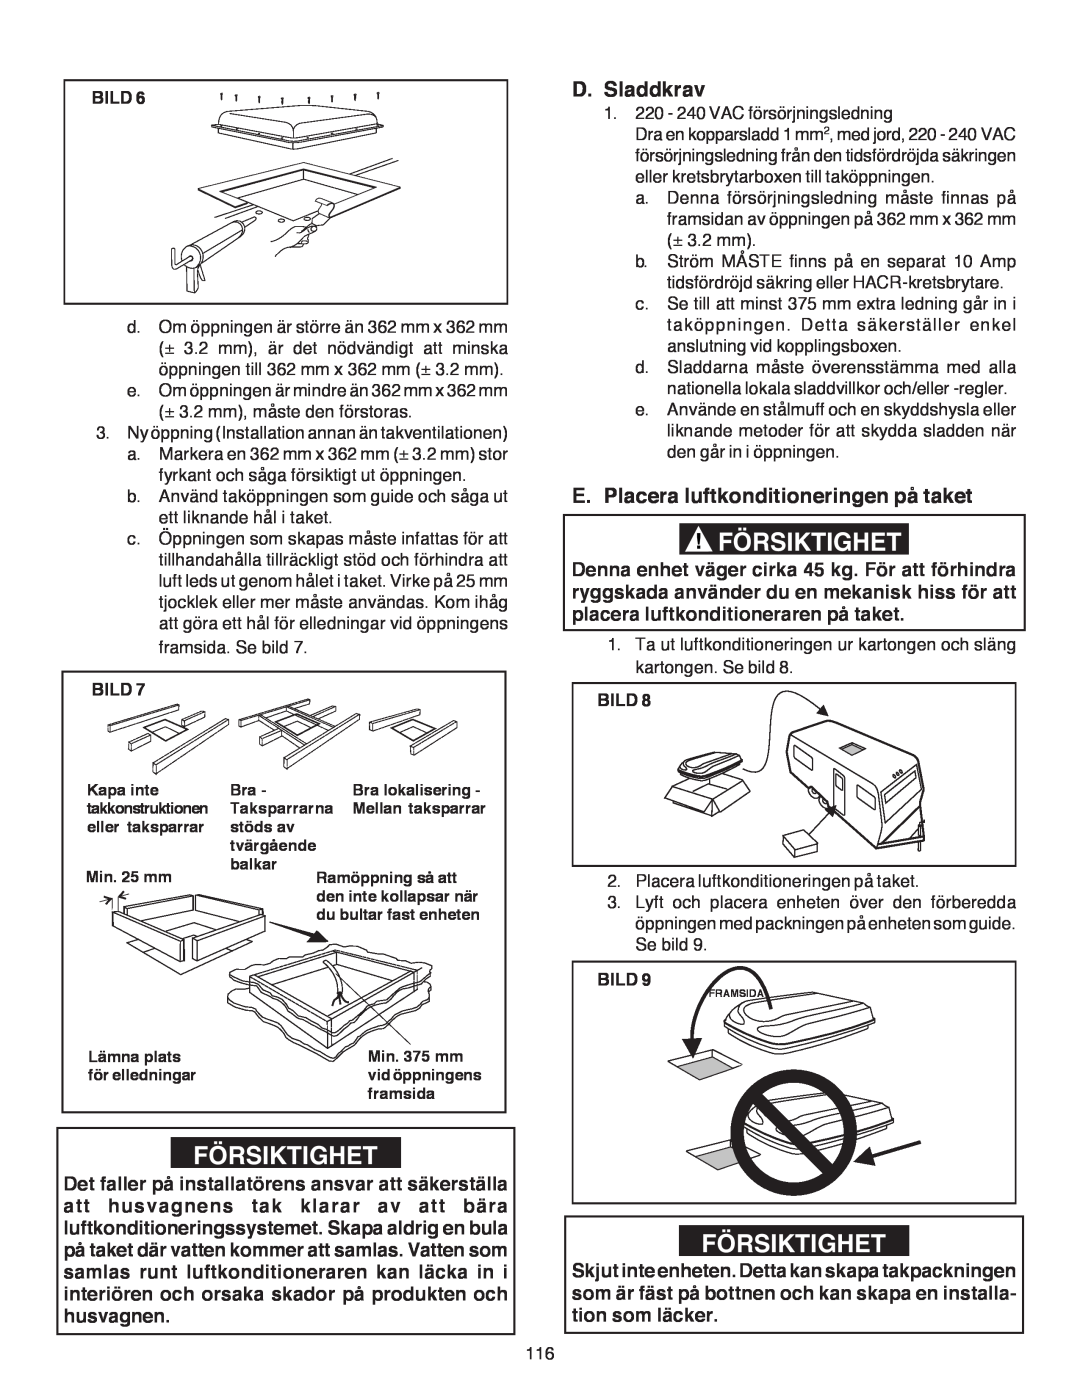 Dometic B3200 manual Försiktighet, D.Sladdkrav, E.Placera luftkonditioneringen på taket 